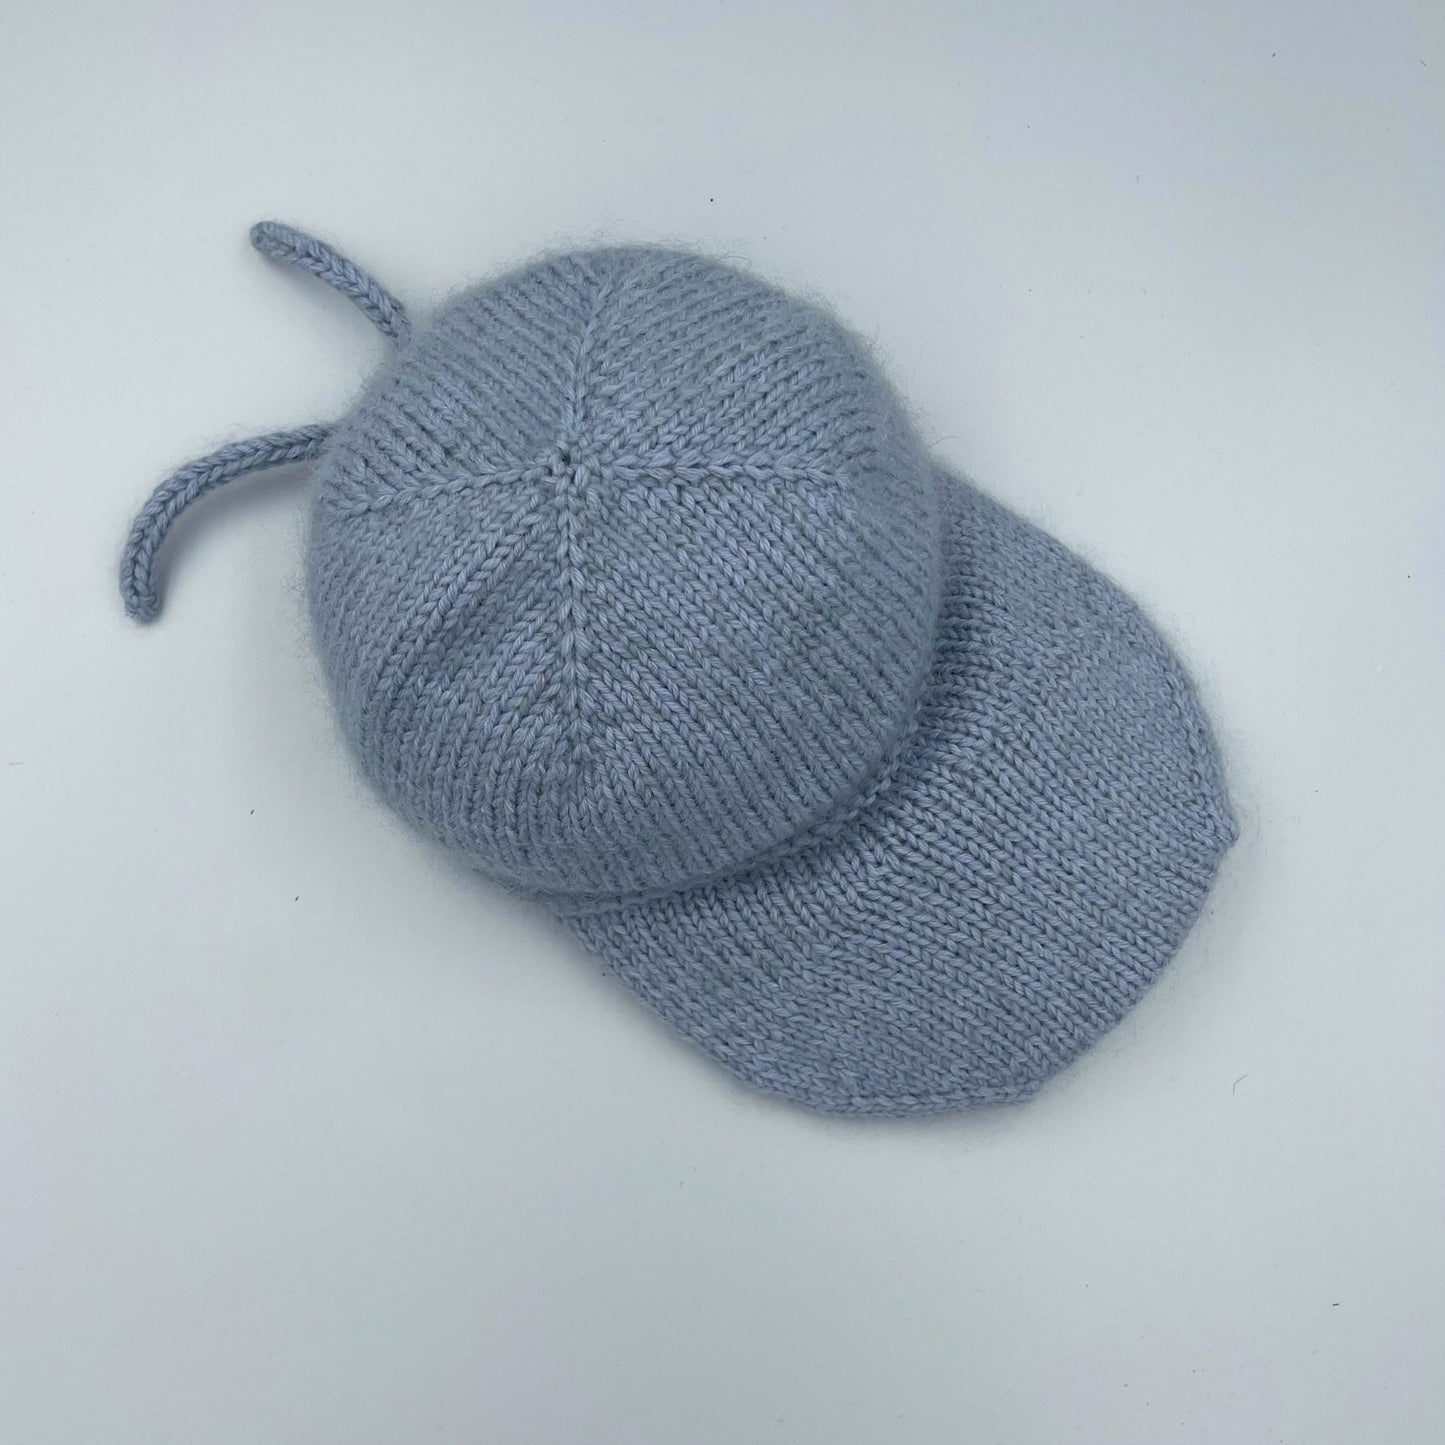 Pastel Winter Cap. Strikket kasket, strikkeopskrift fra Pastelkollektivet